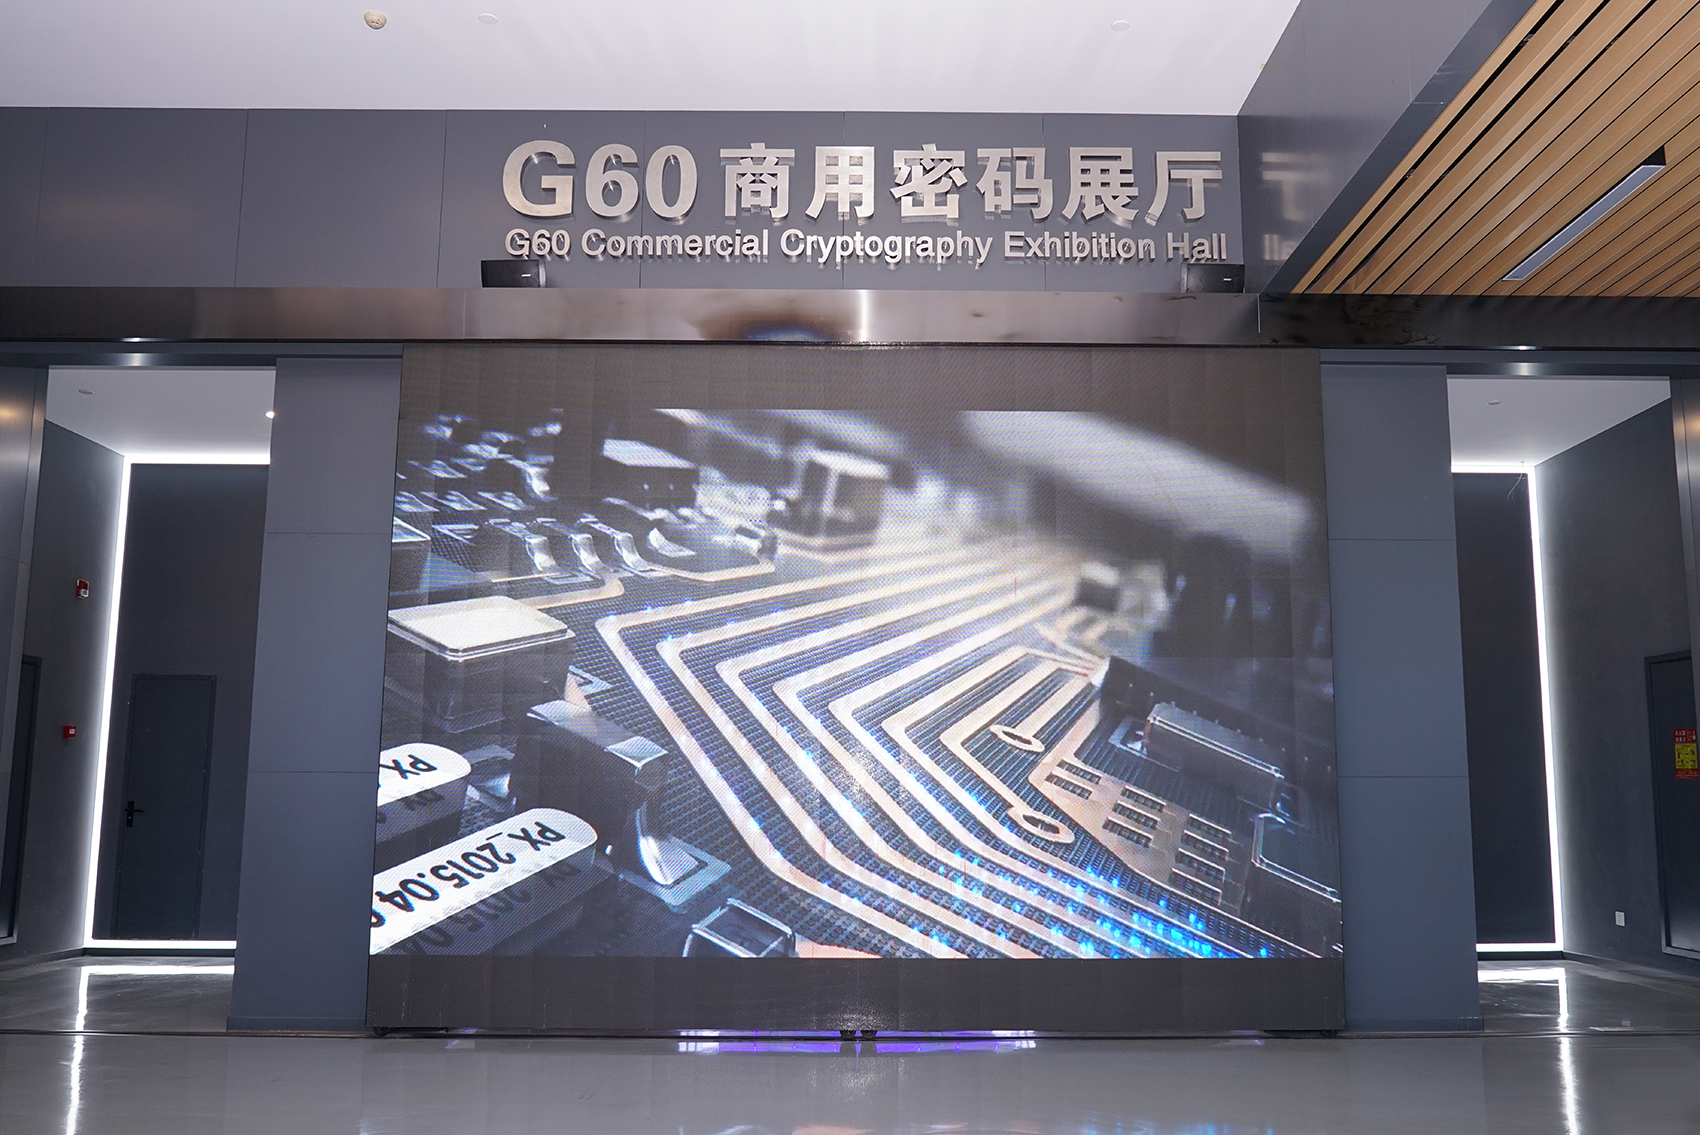 G60商用密码展厅